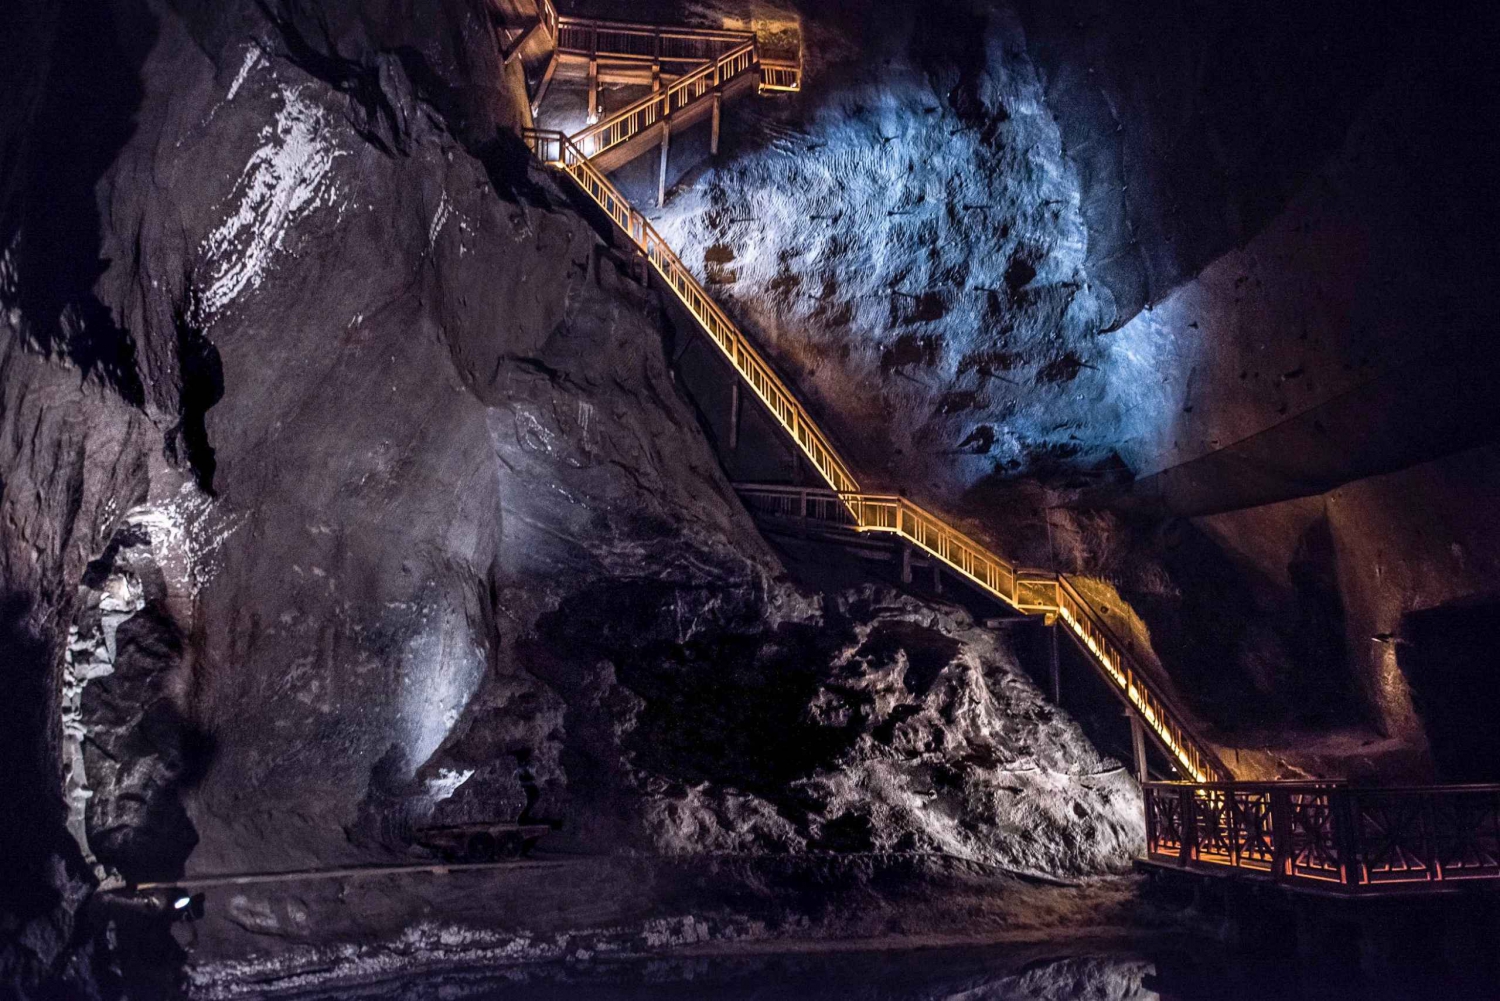 Wieliczka Salt Mine Tour Including Hotel Pick-Up